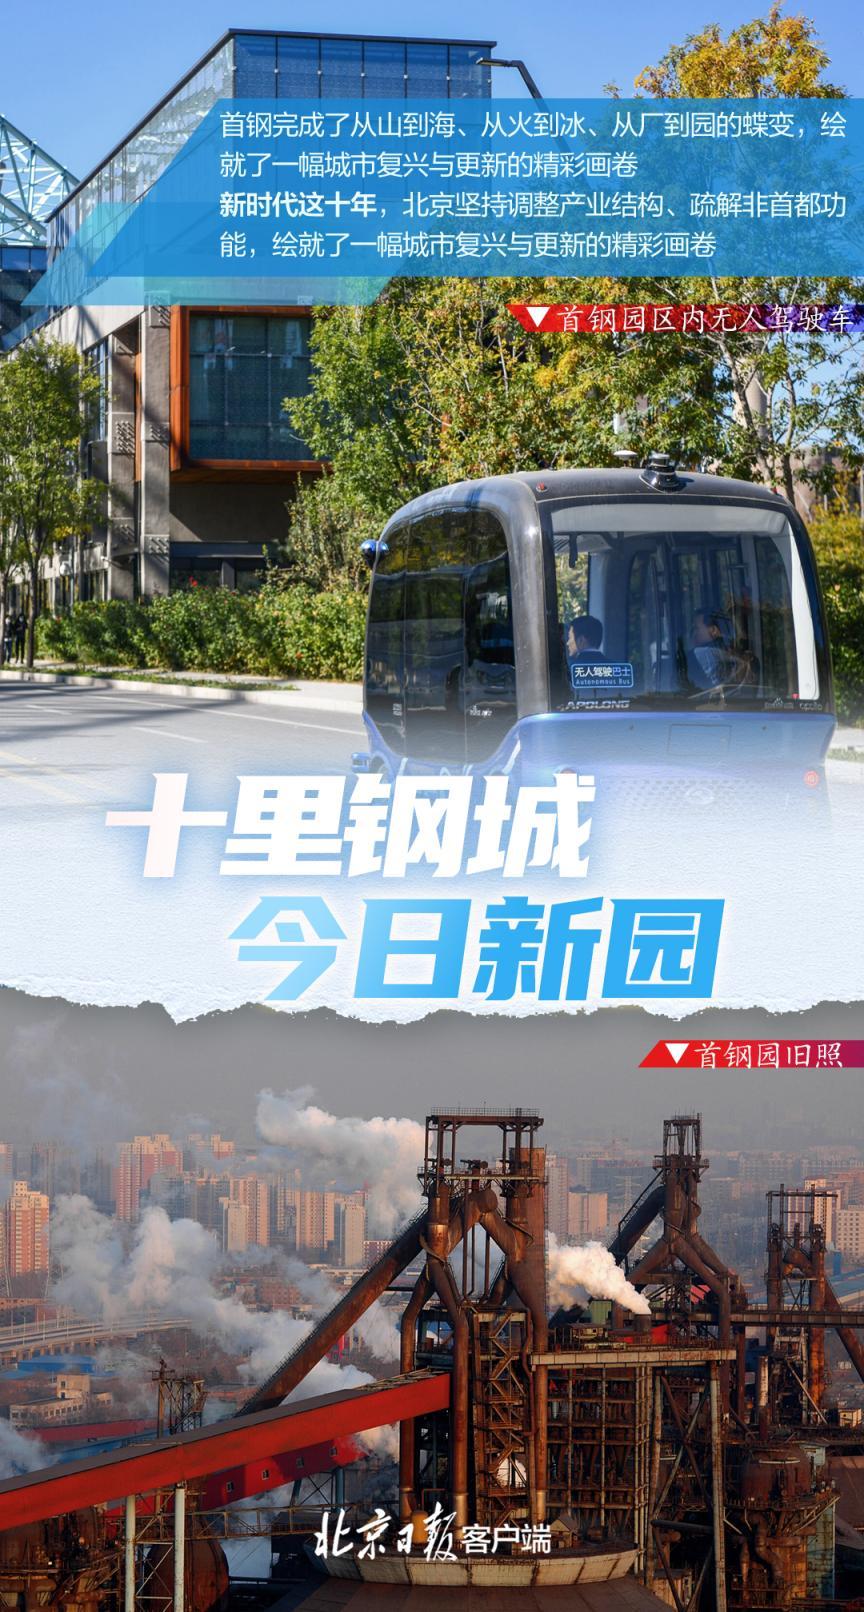 10张海报看懂北京的“减”与“加”